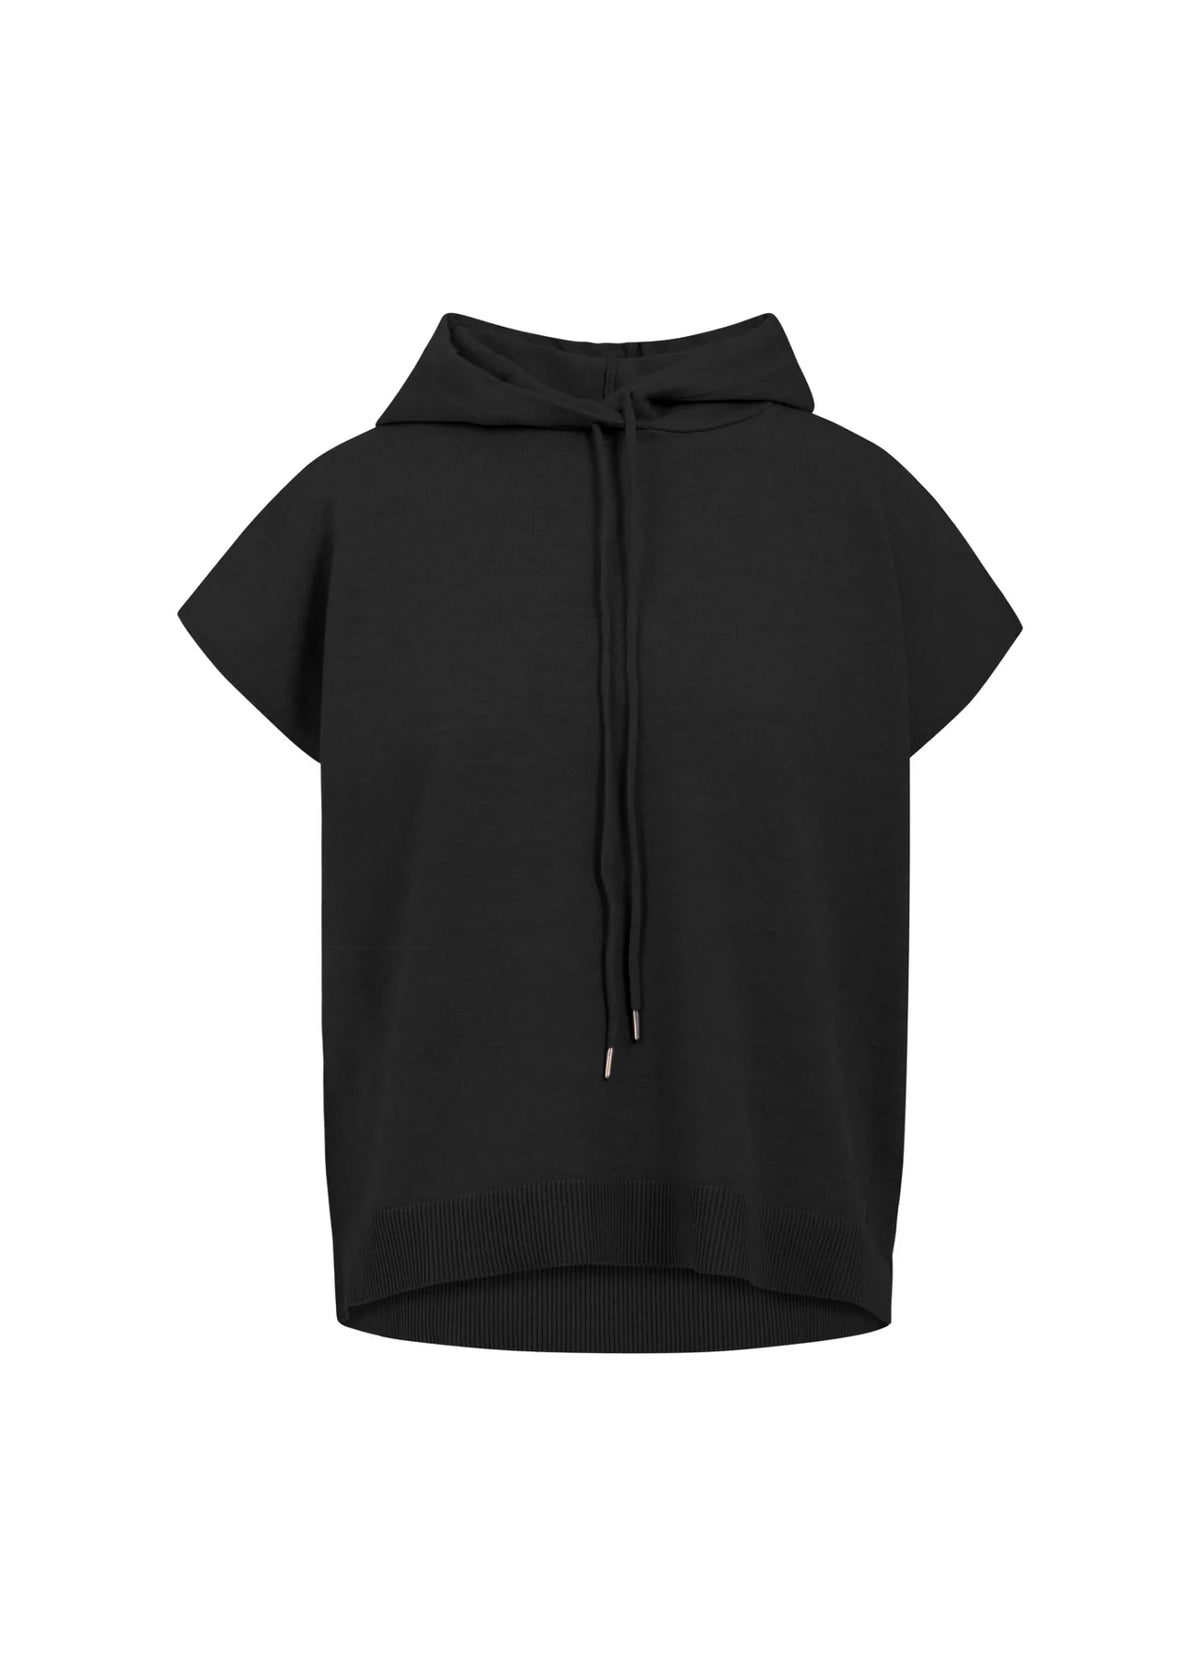 CC Heart -  Comfy Knit Vest Black